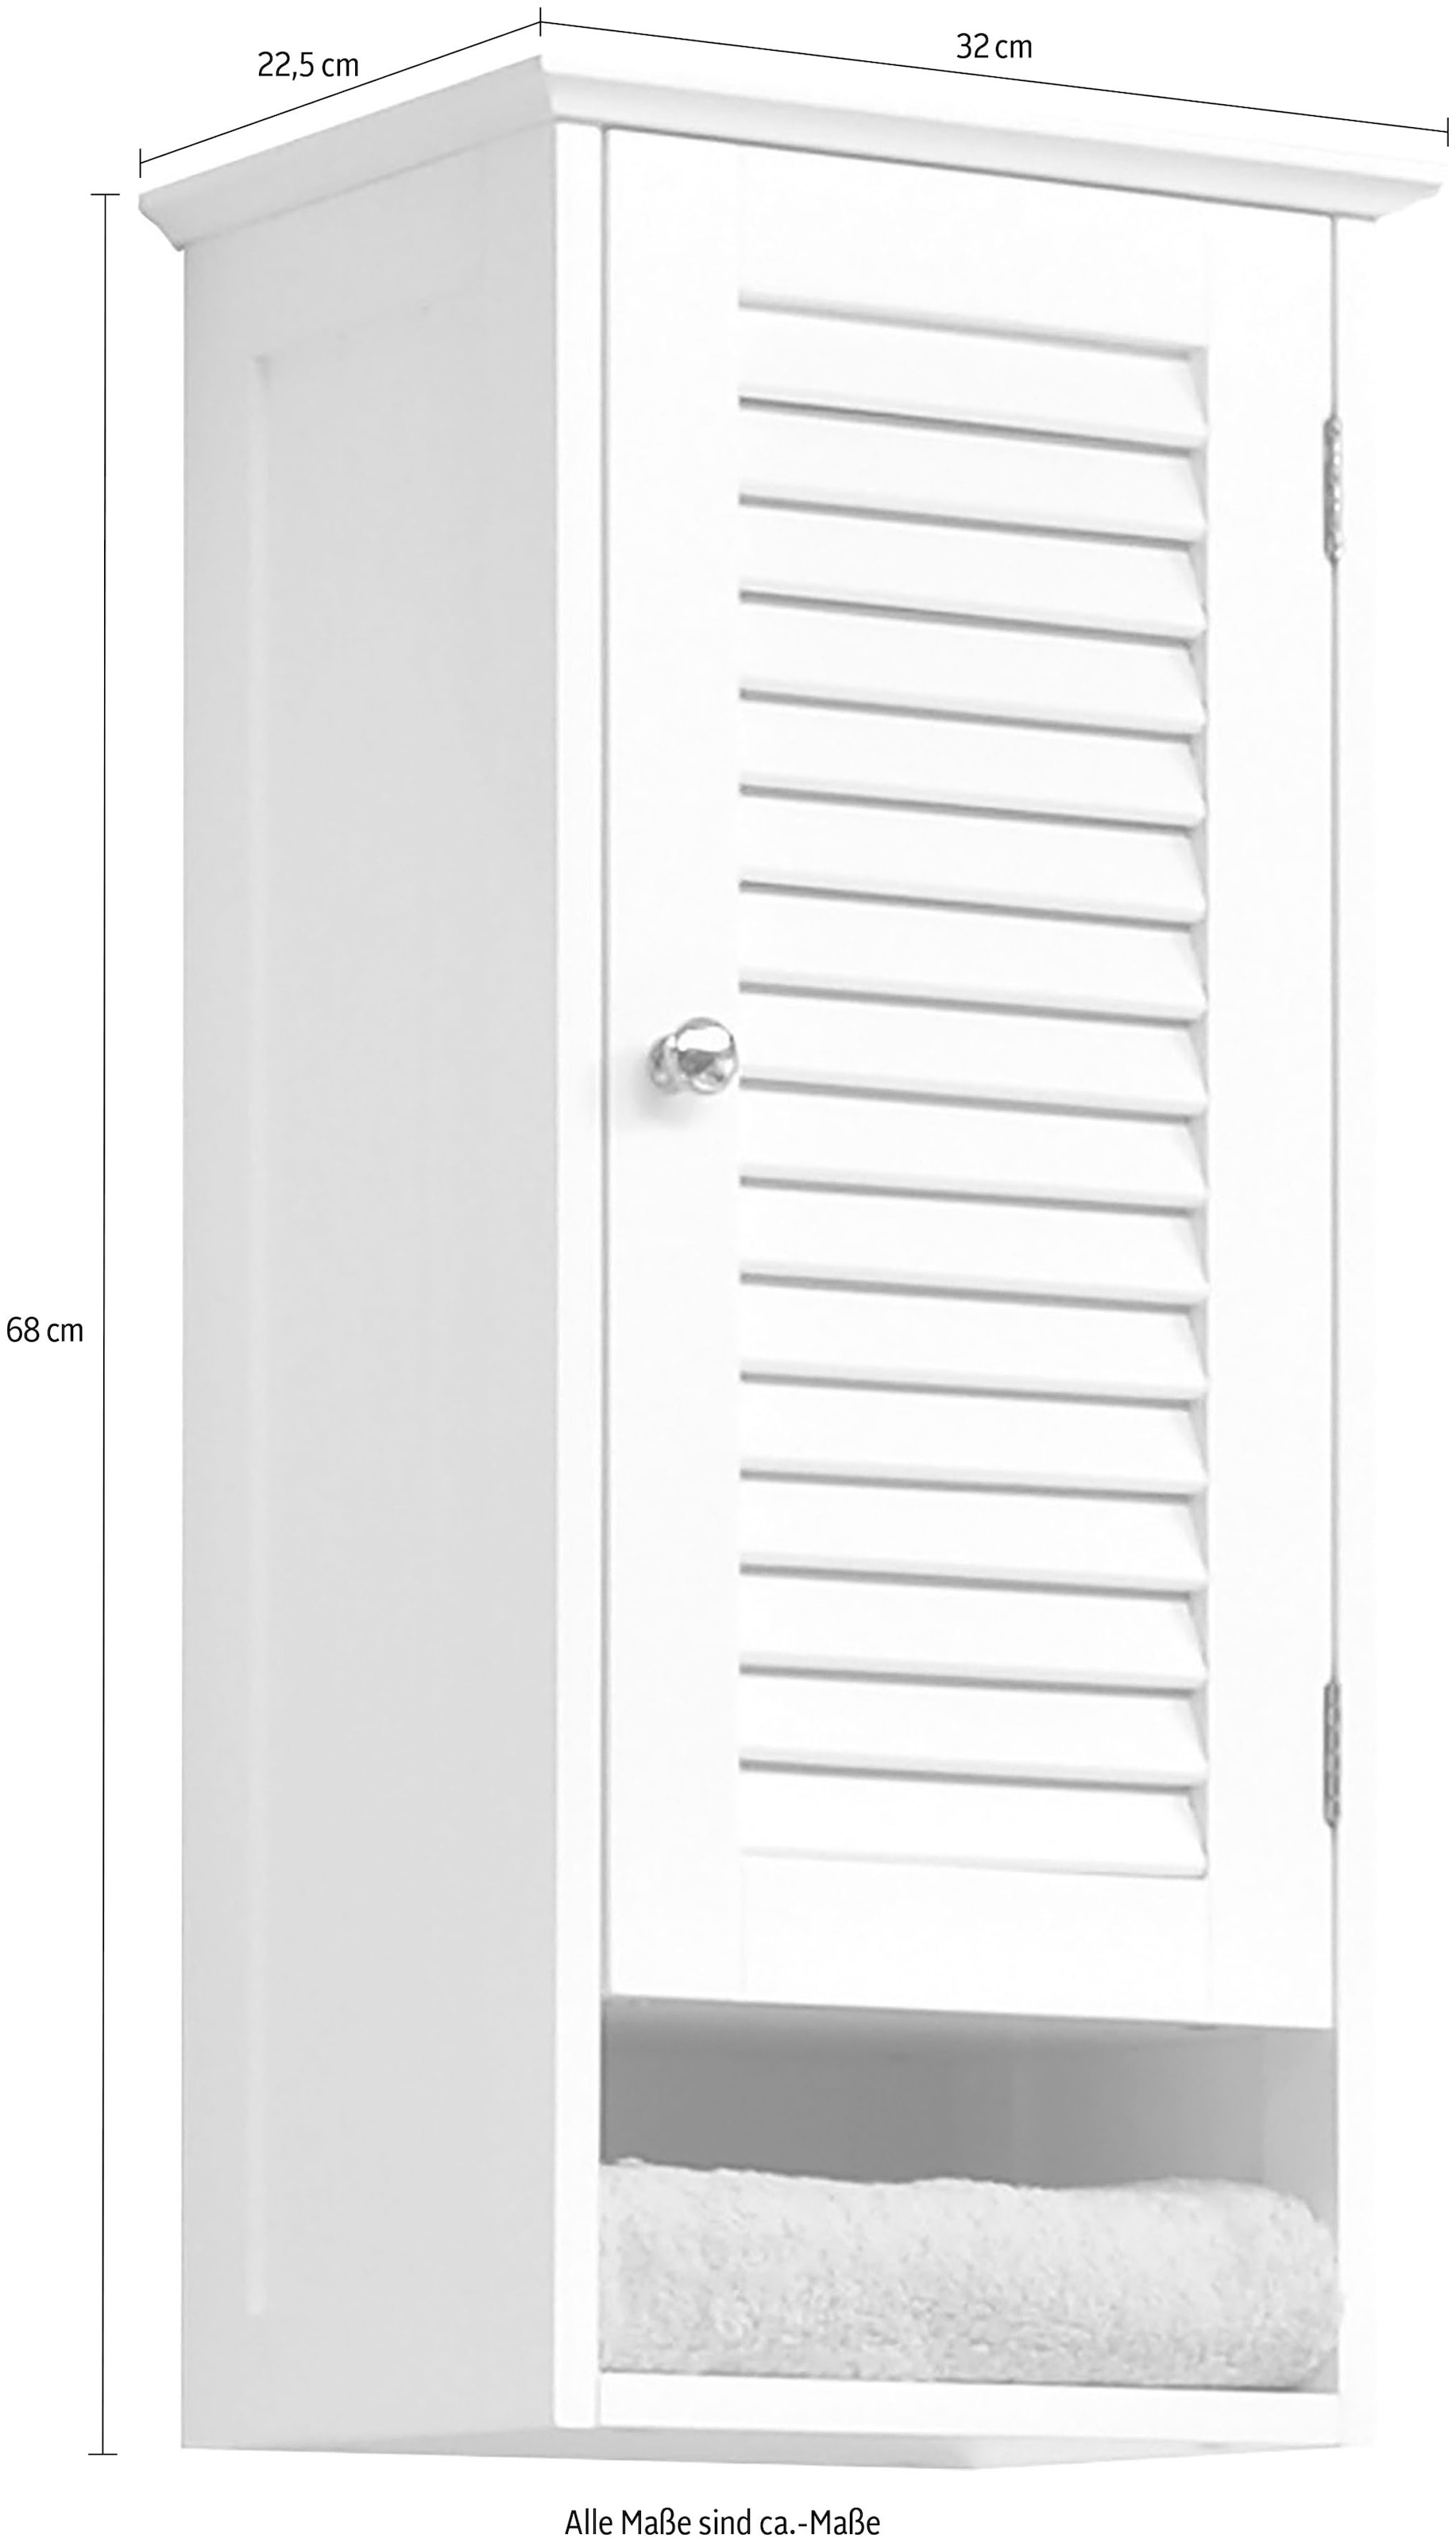 Saphir Hängeschrank »Quickset 928 Wand-Badschrank, 1 Tür, 1 Einlegeboden, 1 Nische«, Badezimmer-Hängeschrank, 32 cm breit, Weiß, Landhaus-Stil